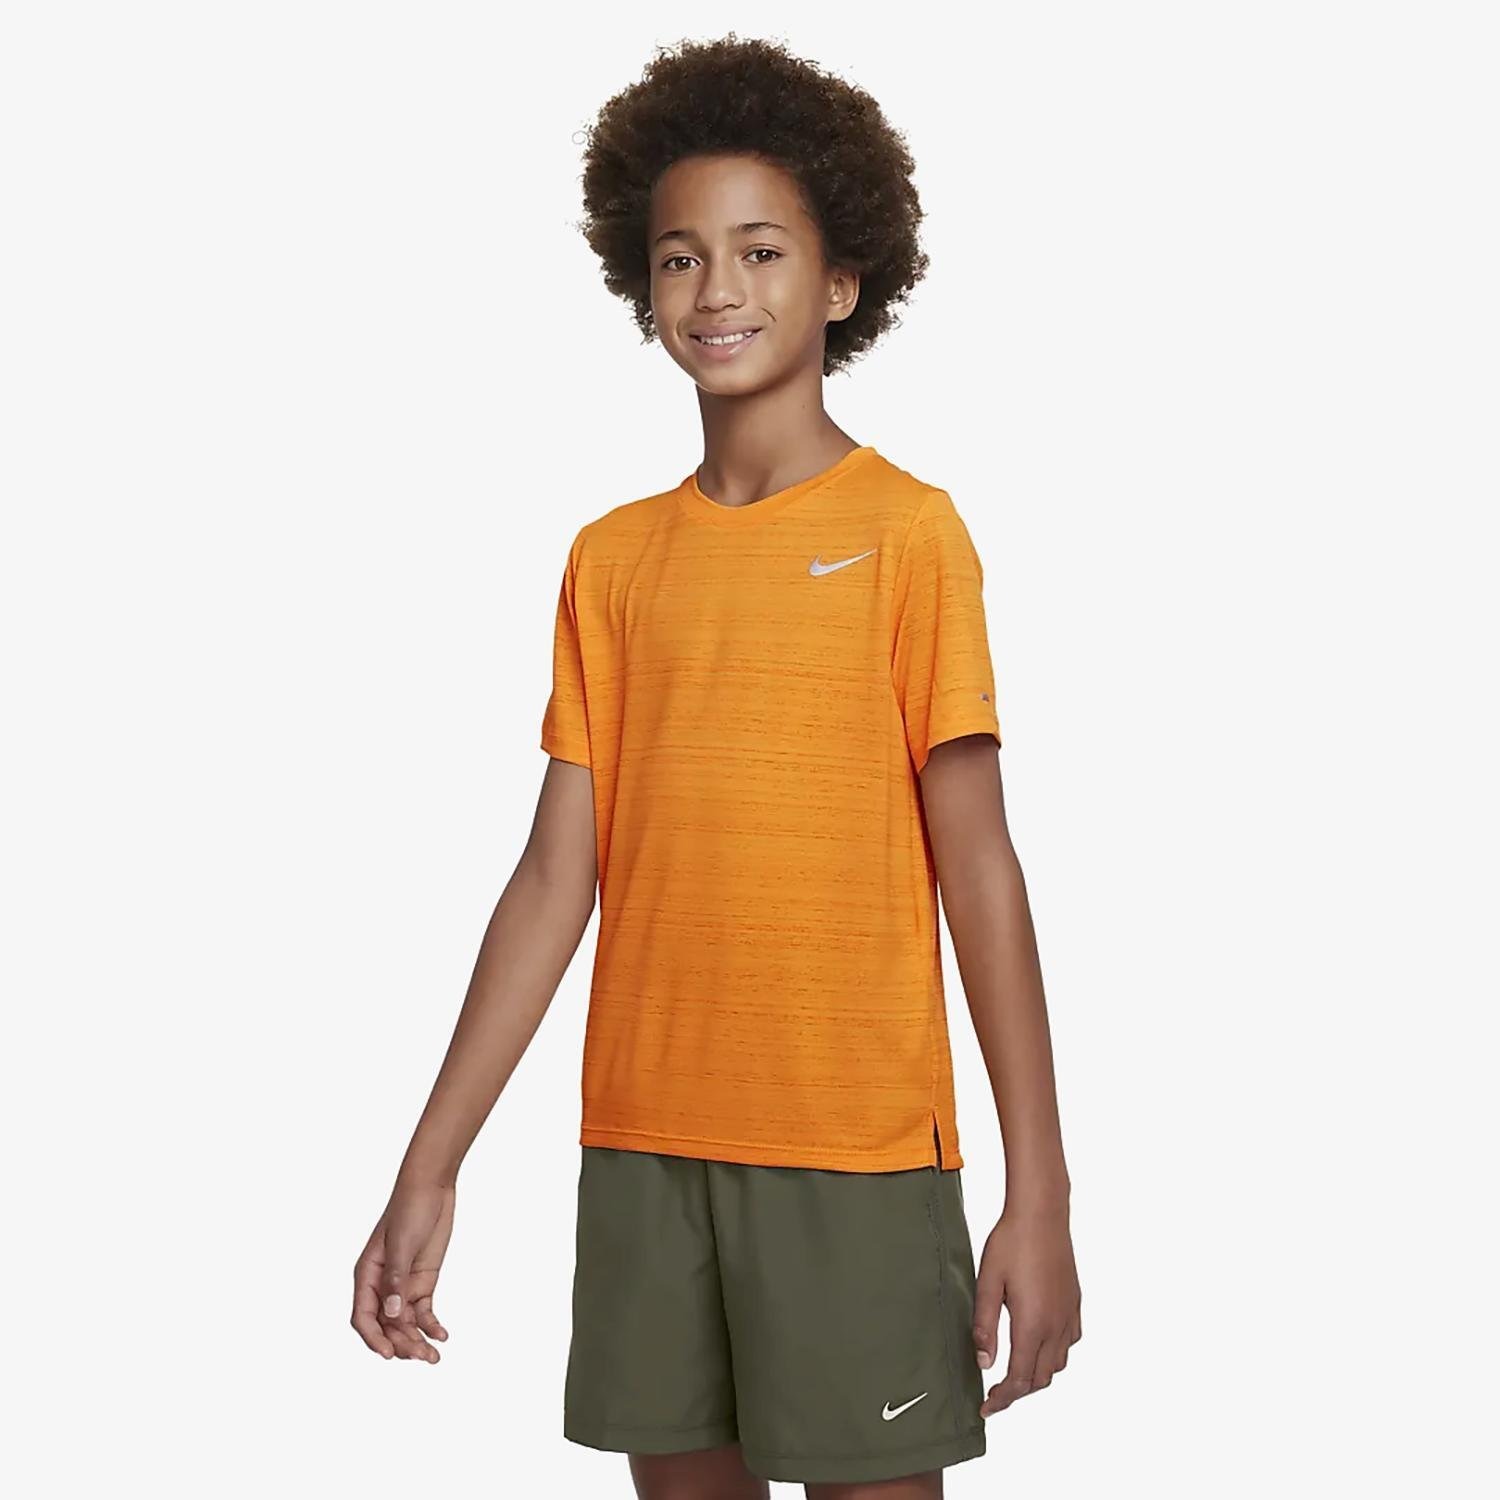 Nike Nike hardloopshirt oranje kinderen kinderen